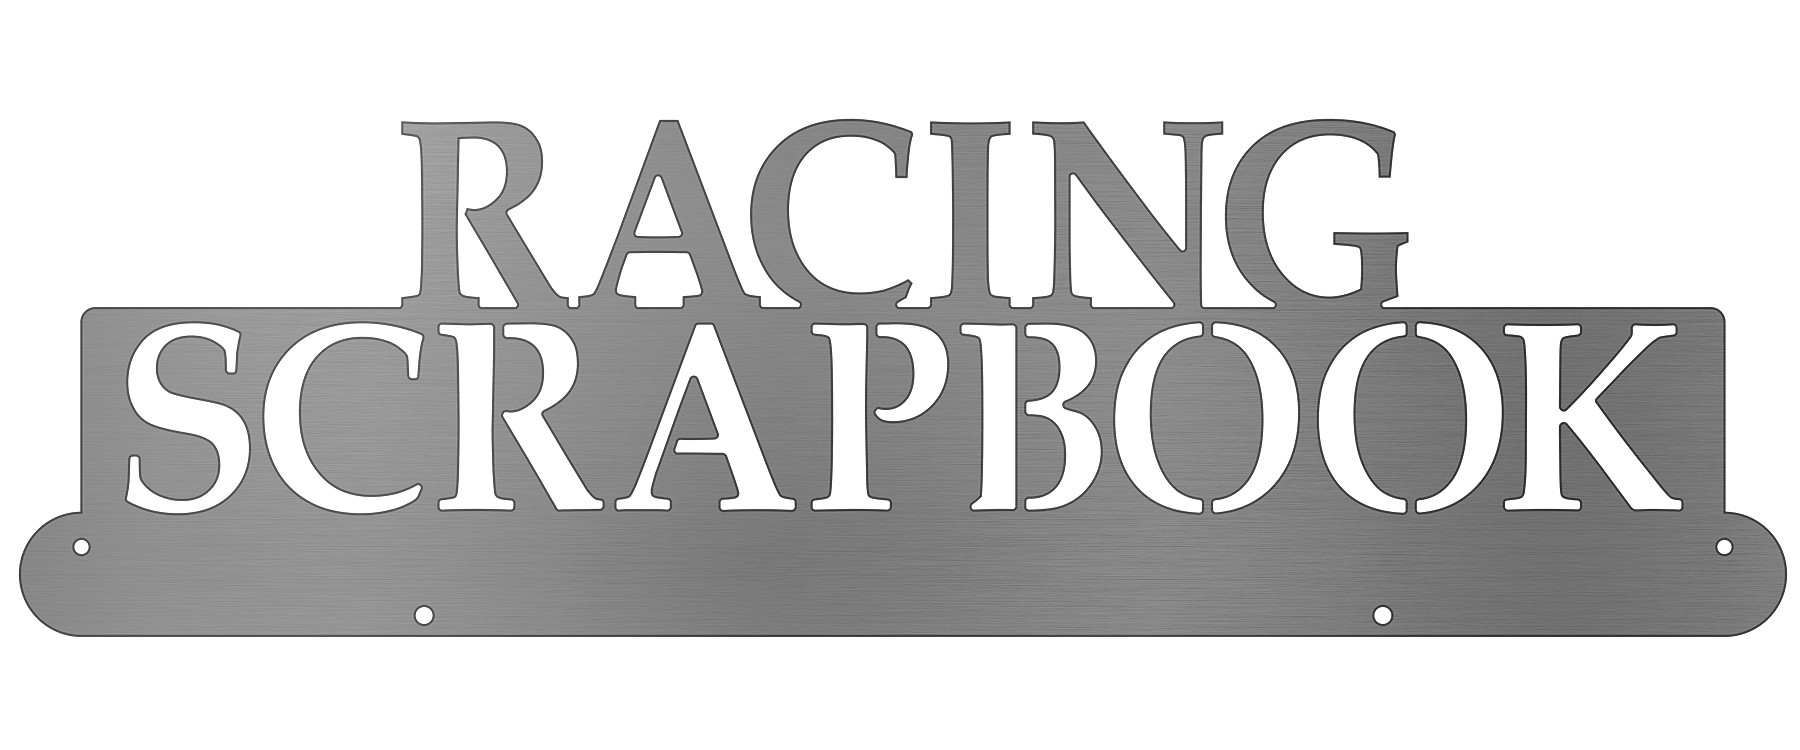 Racing Scrapbook Bib Display